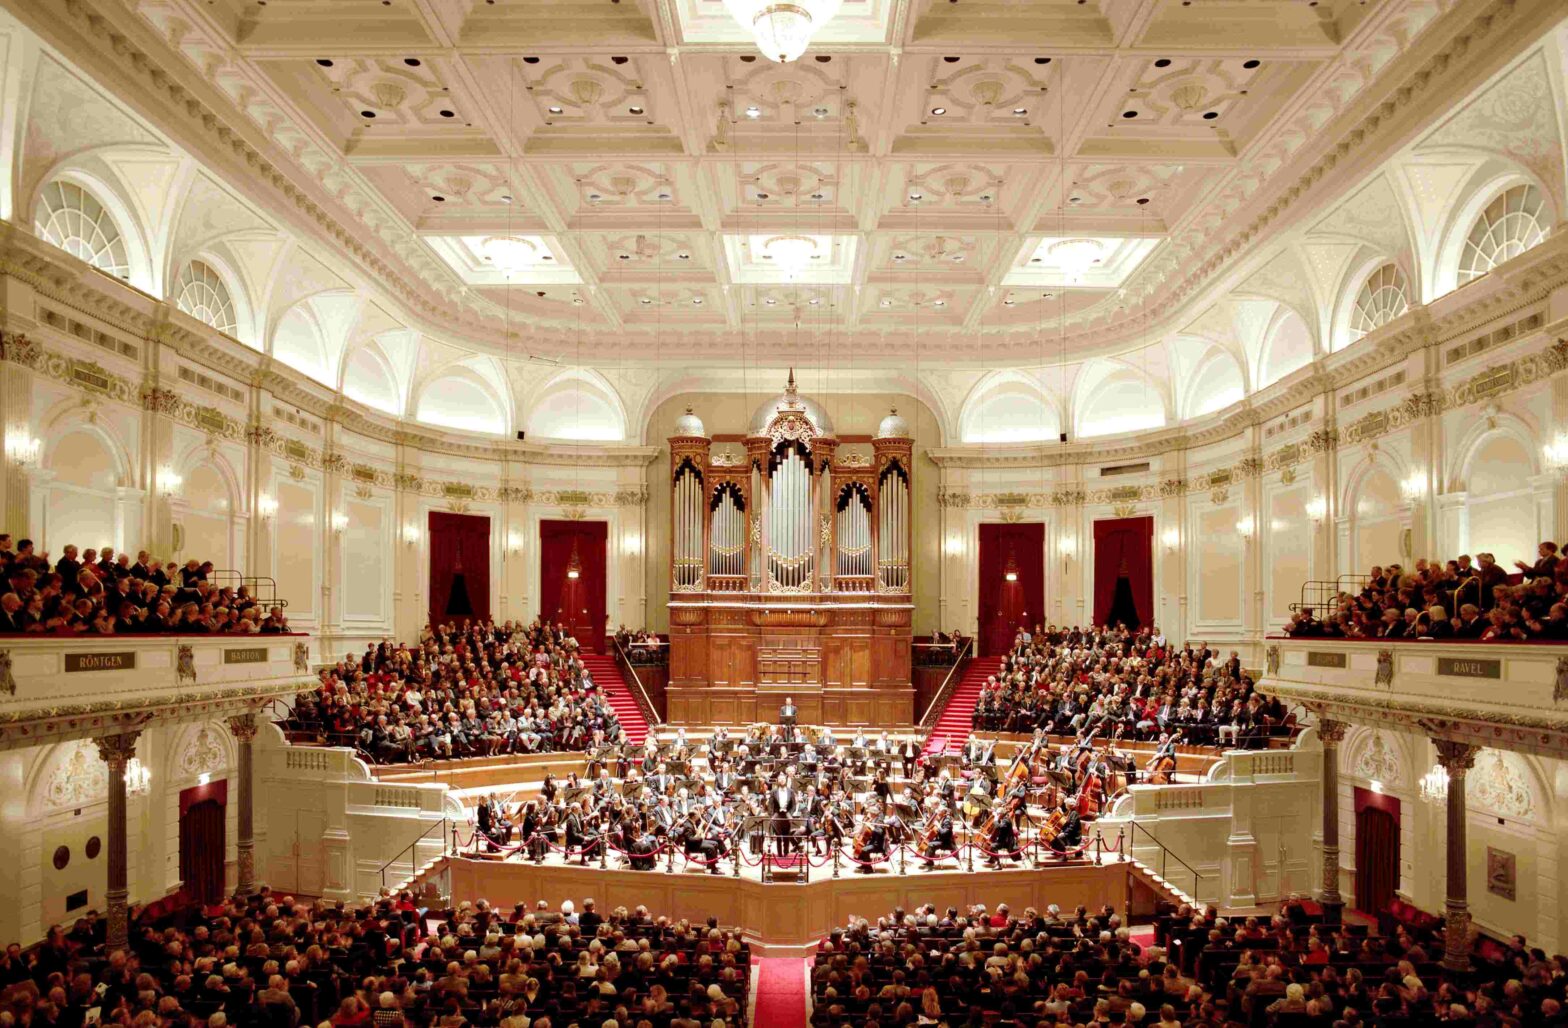 « Radio Filharmonish Orkest » au Concertgebouw d’Amsterdam, dirigé par Stéphane Denève